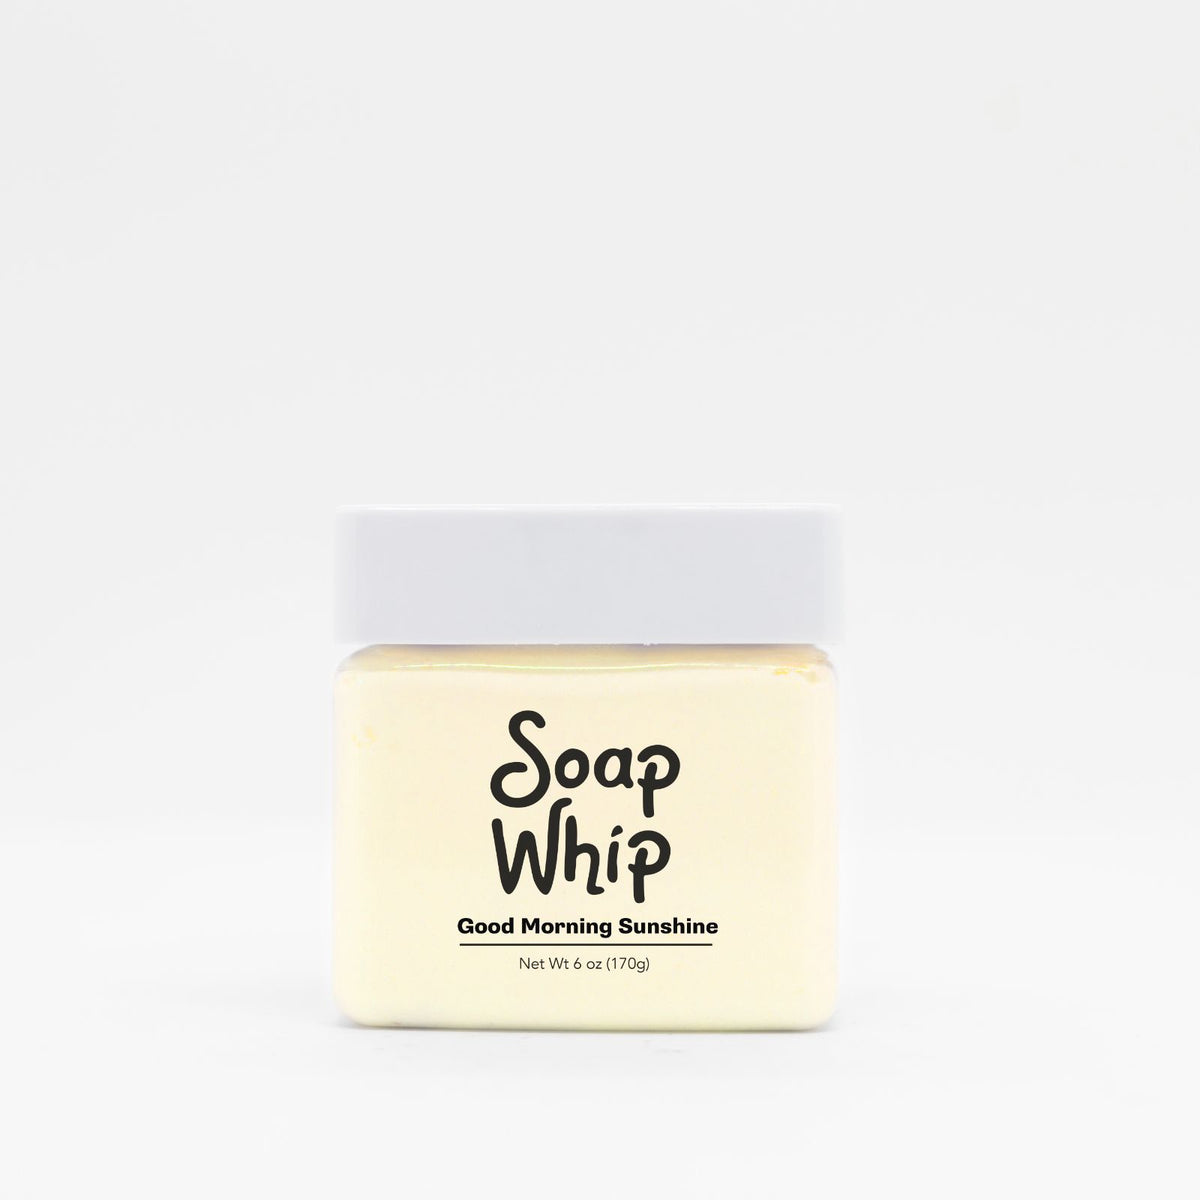 Good Morning Sunshine Soap Whip